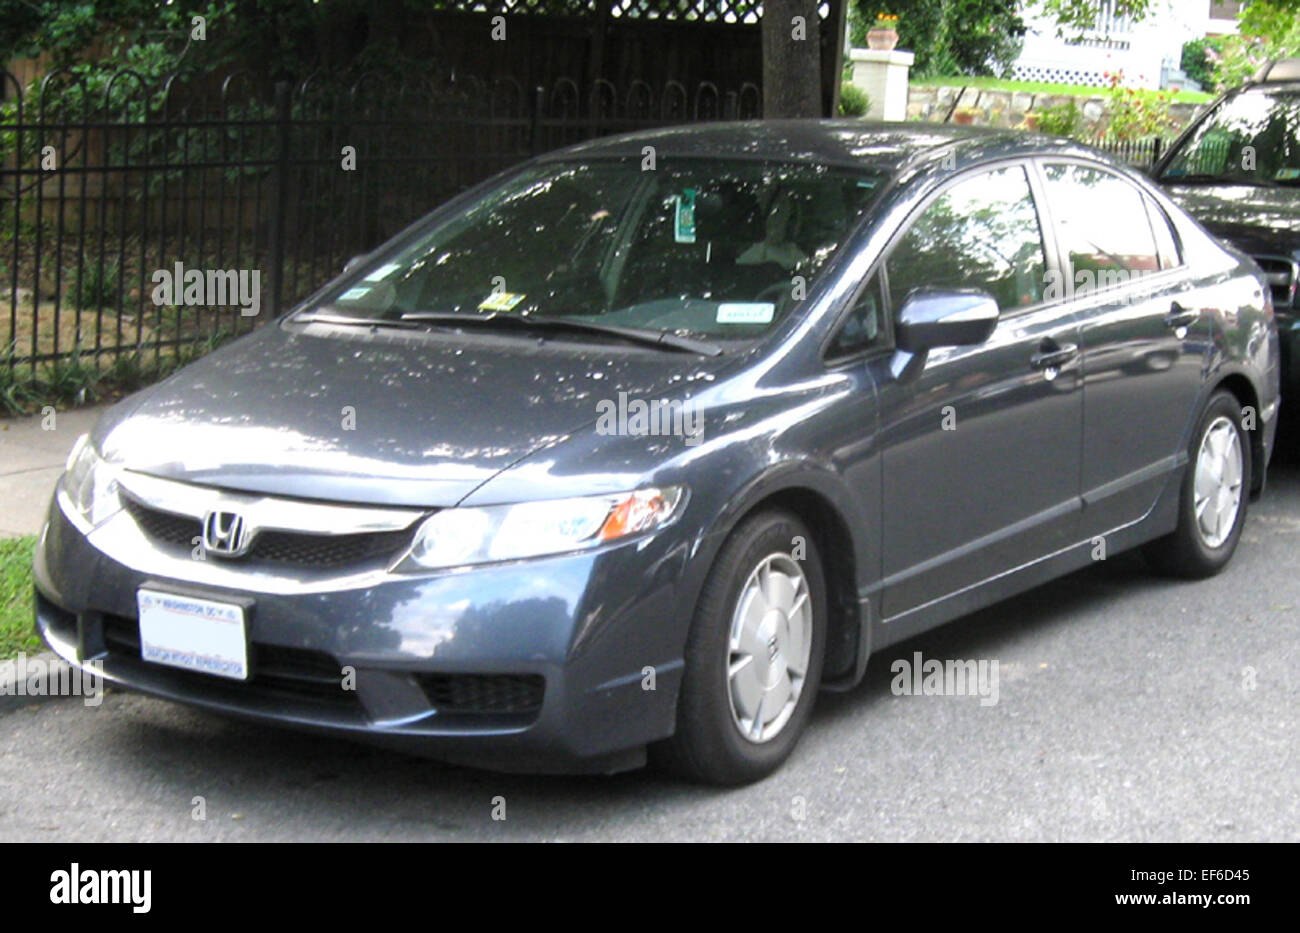 Honda civic 2009. Honda Civic Hybrid 2009. Хонда Цивик гибрид 2009. Honda Civic 2009 гибрид. Honda Civic гибрид 2005.